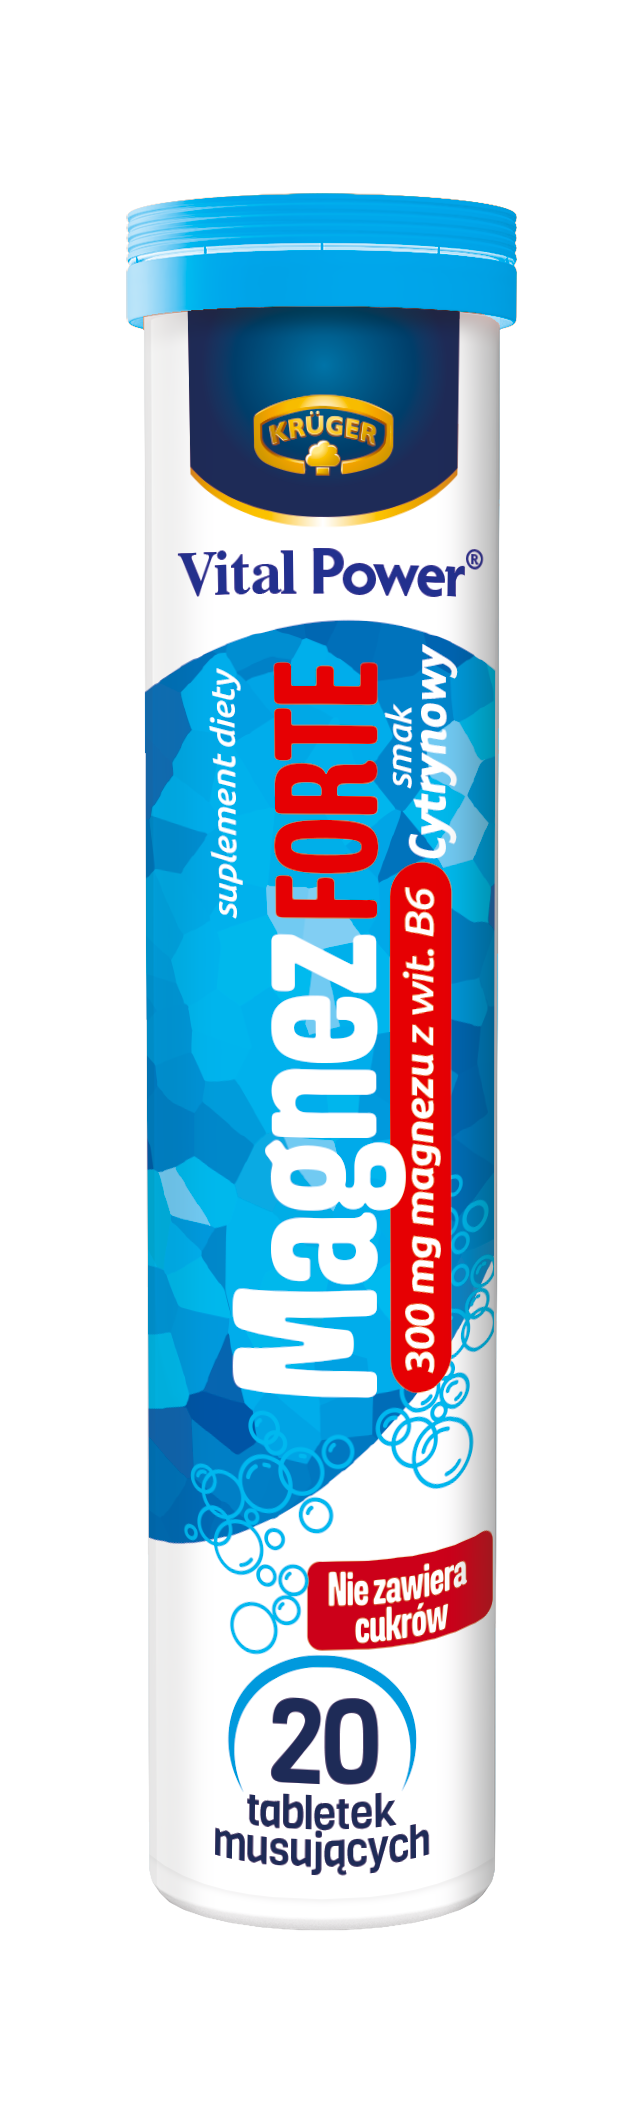 Vital Power Magnez Forte Tabletki musujące o smaku cytrynowym